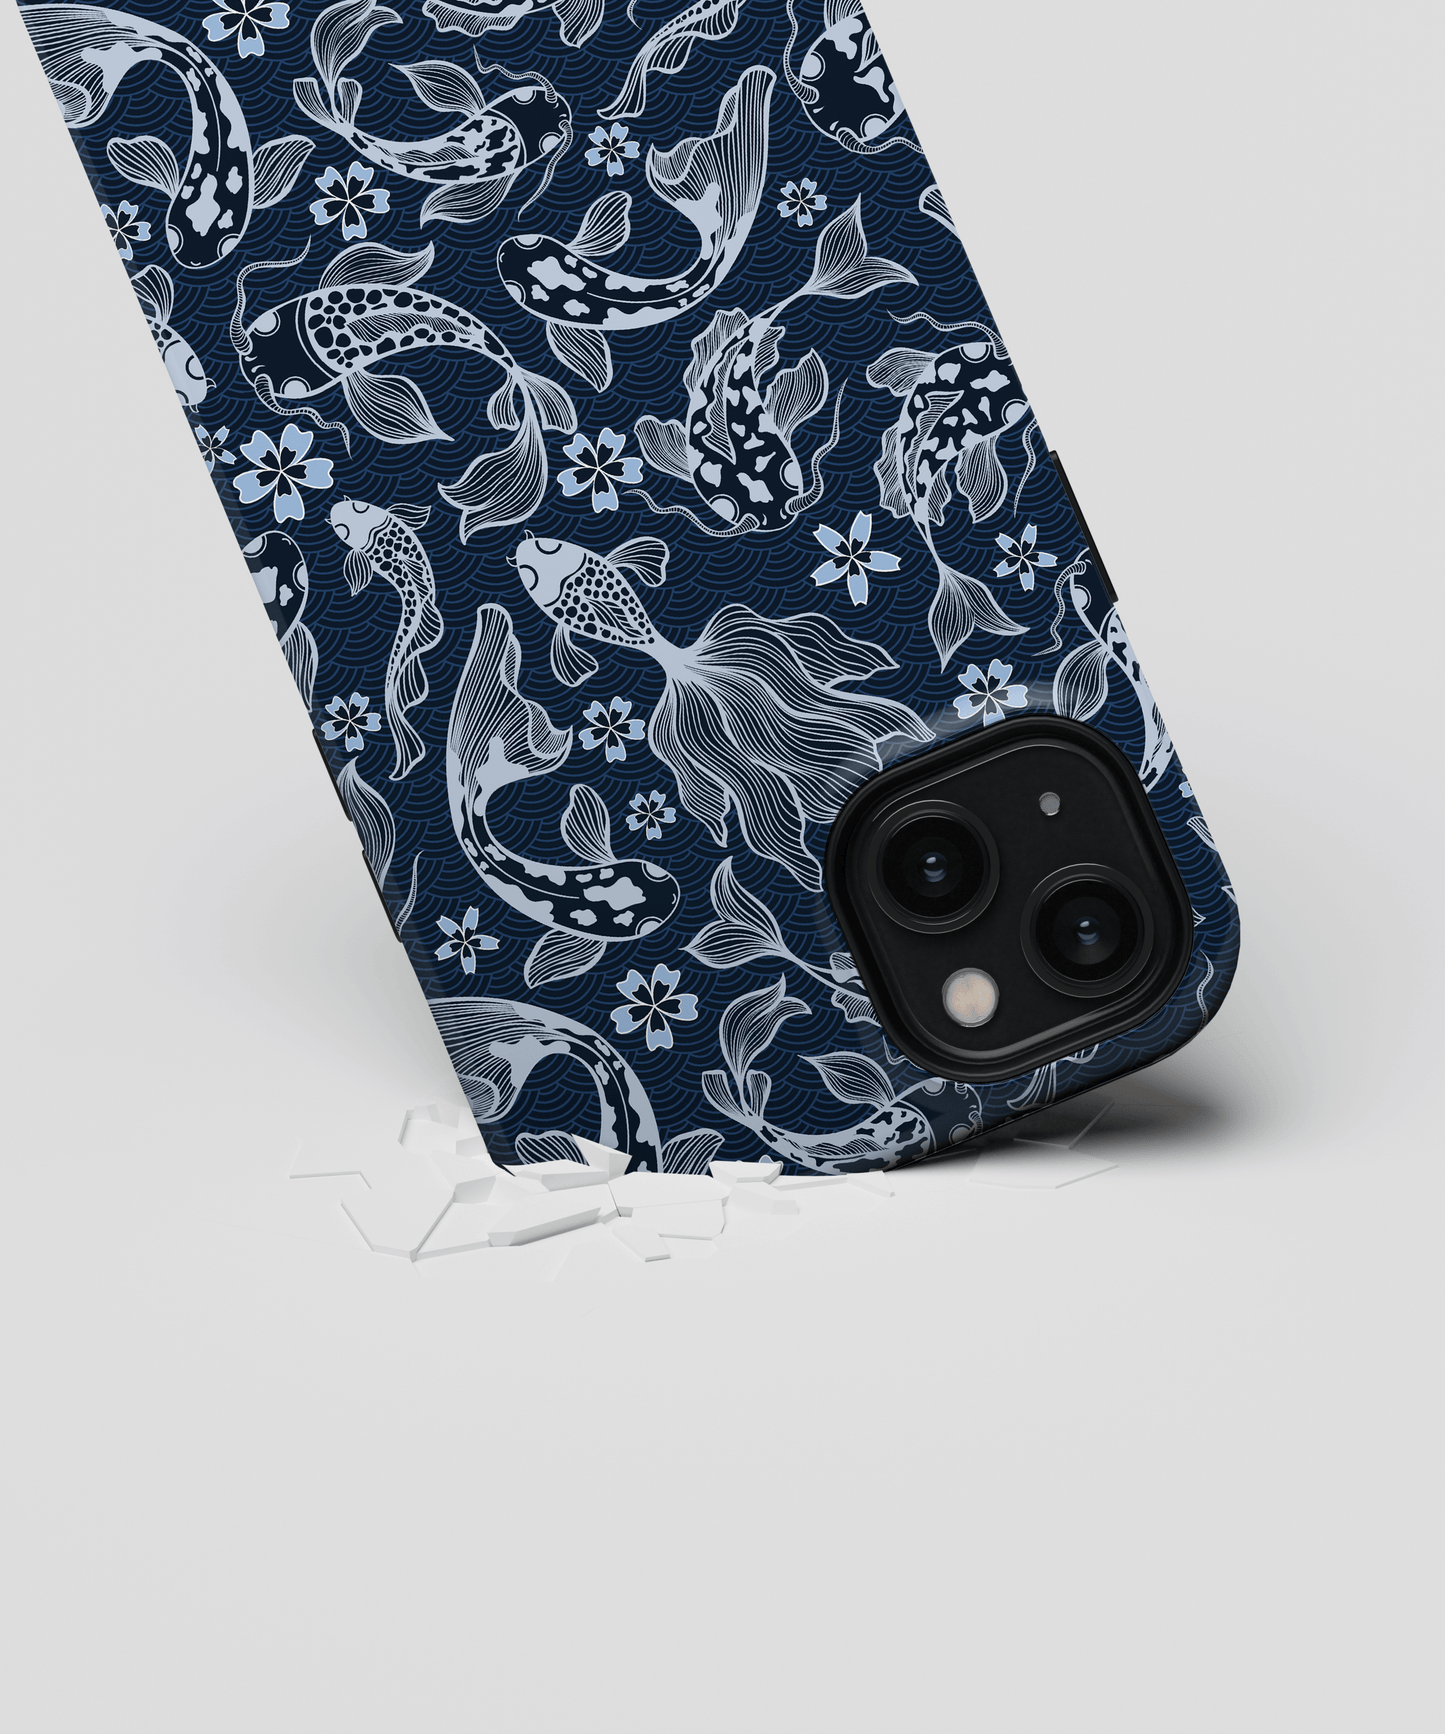 Fishtopia - Samsung Galaxy Note 20 phone case